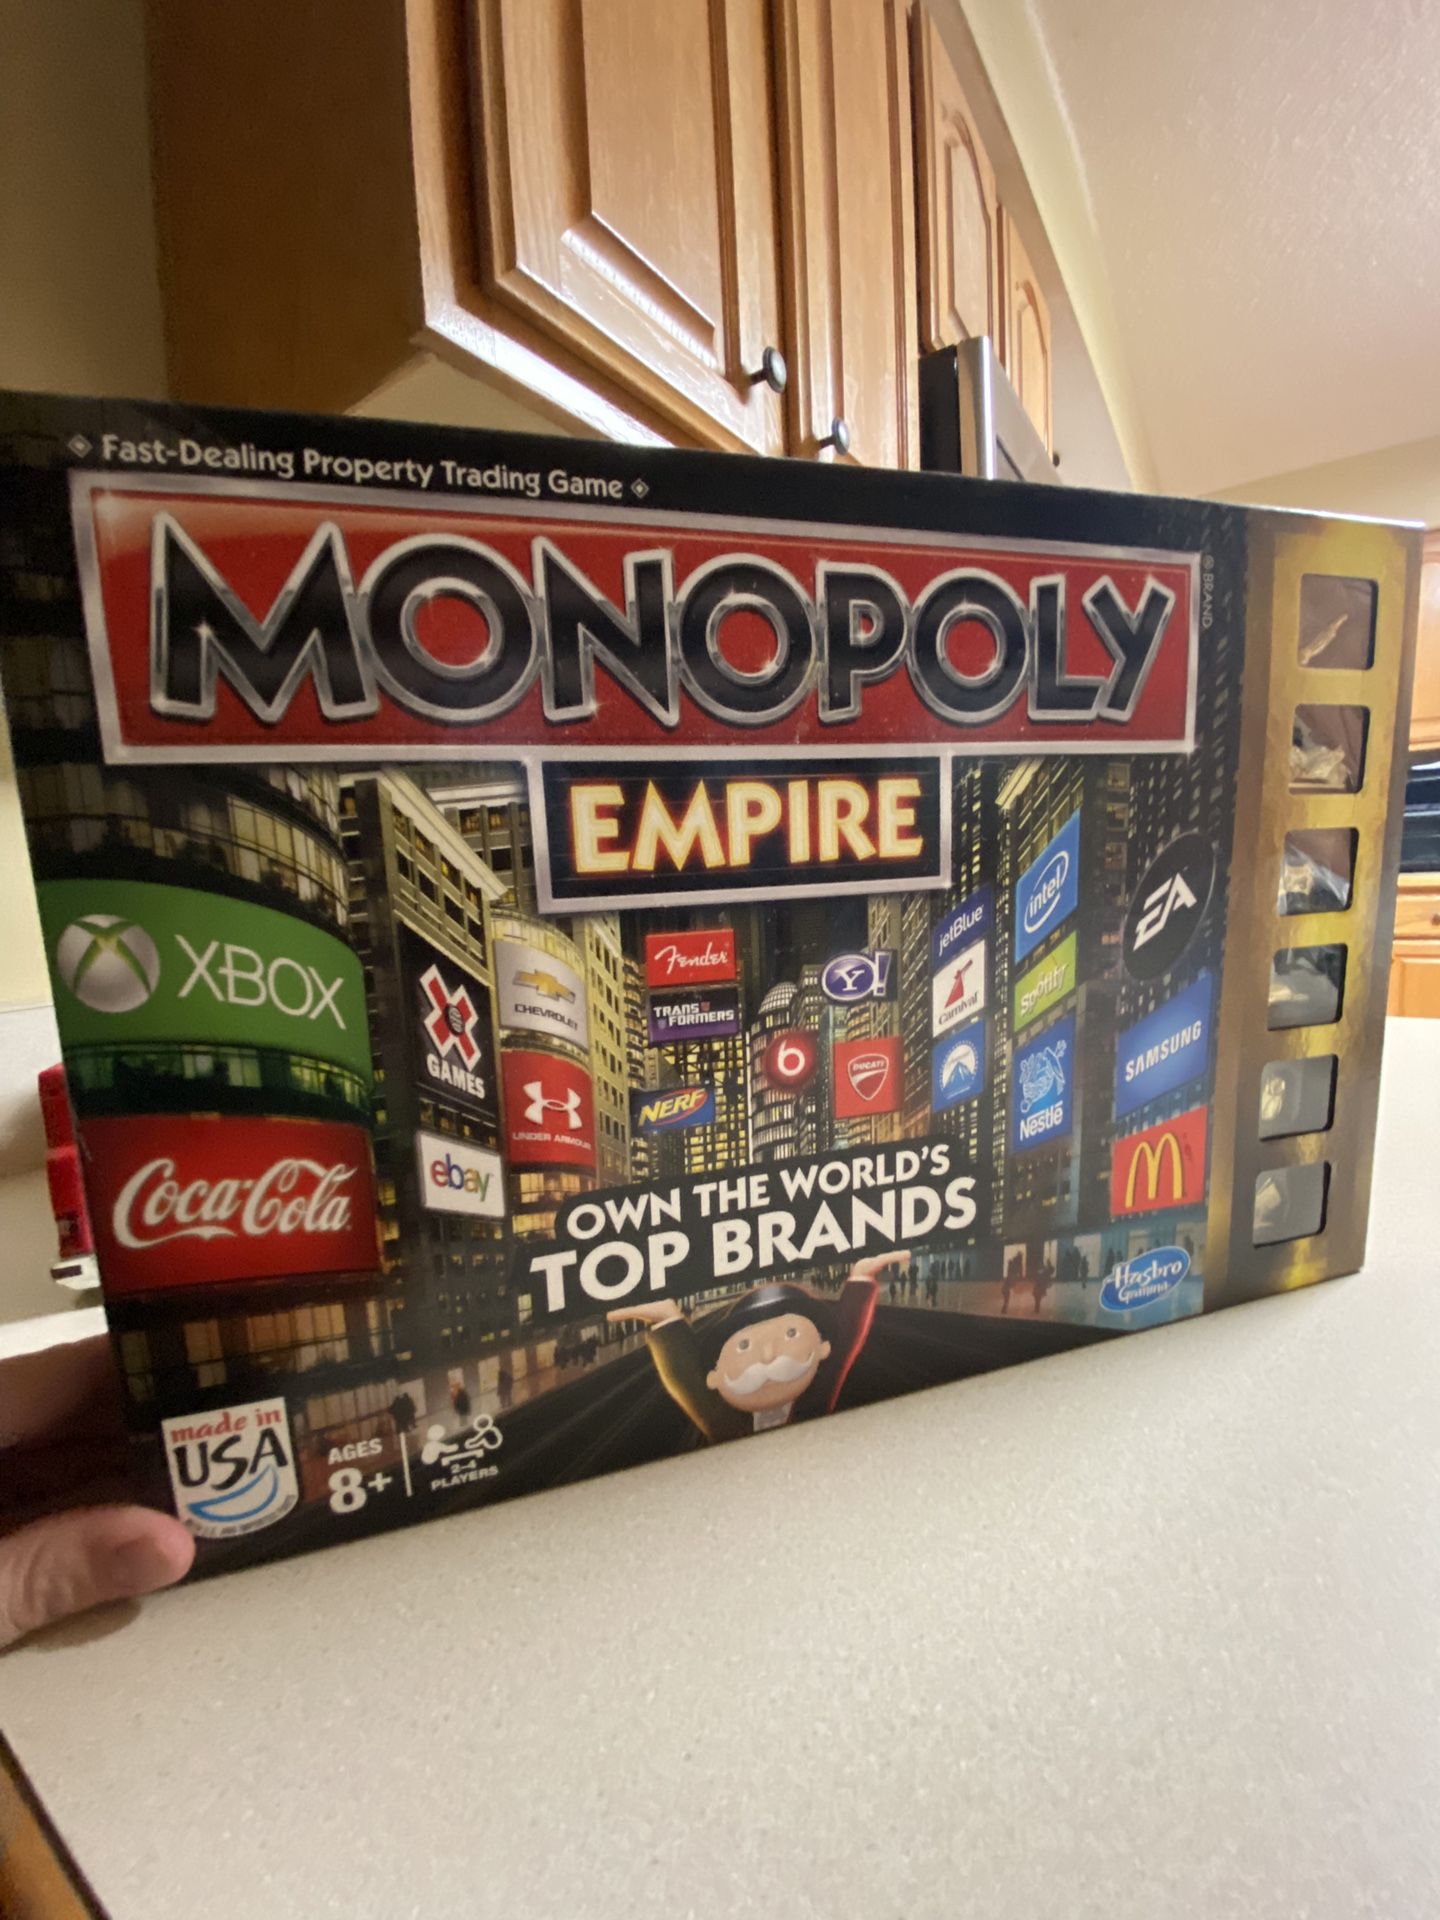 2013 Monopoly Empire